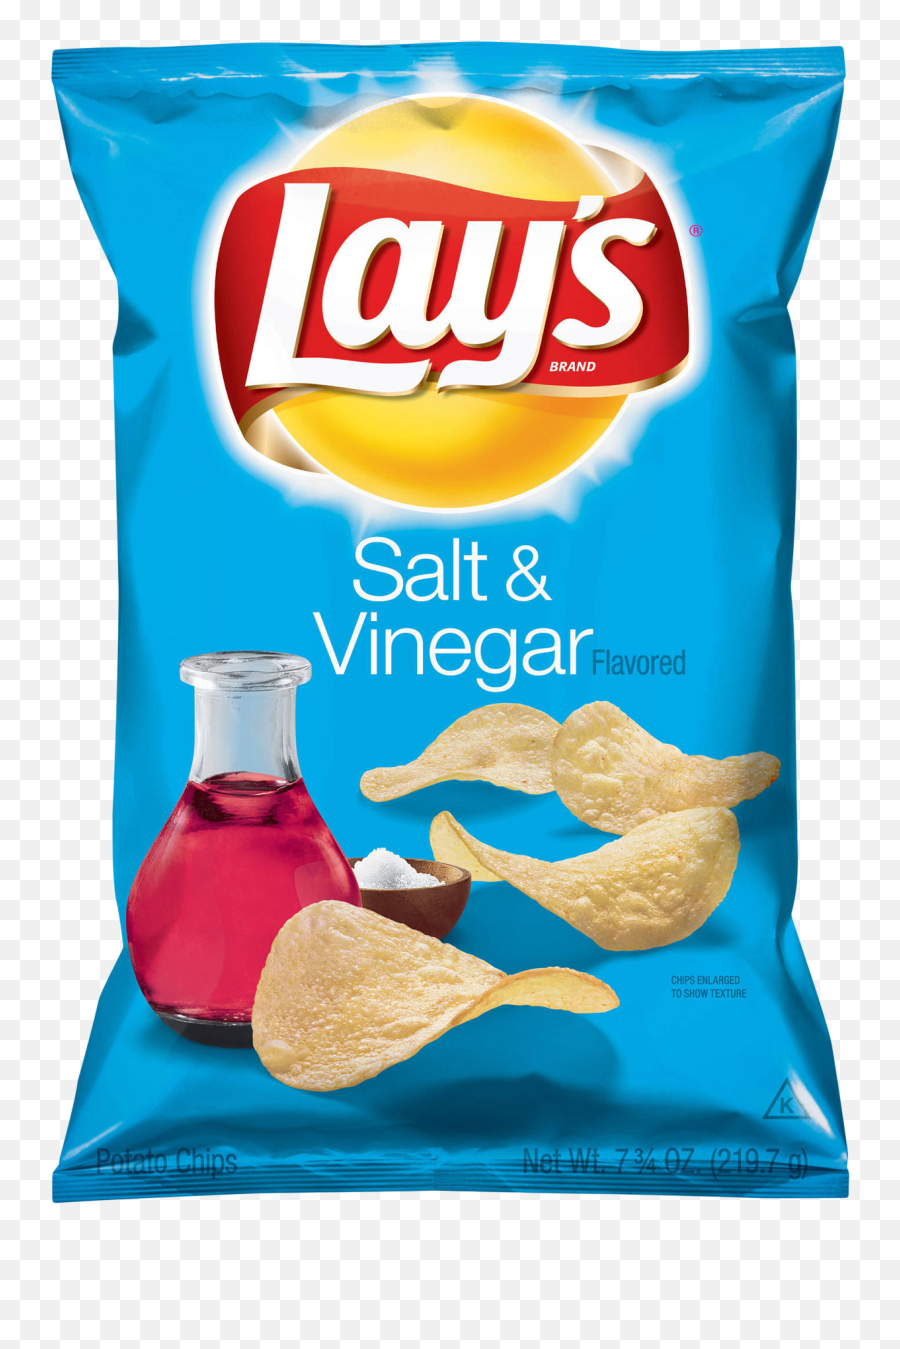 Lays Chips Pack Png Transparent Image - Pngpix Salt And Vinegar Chips,Chip Png